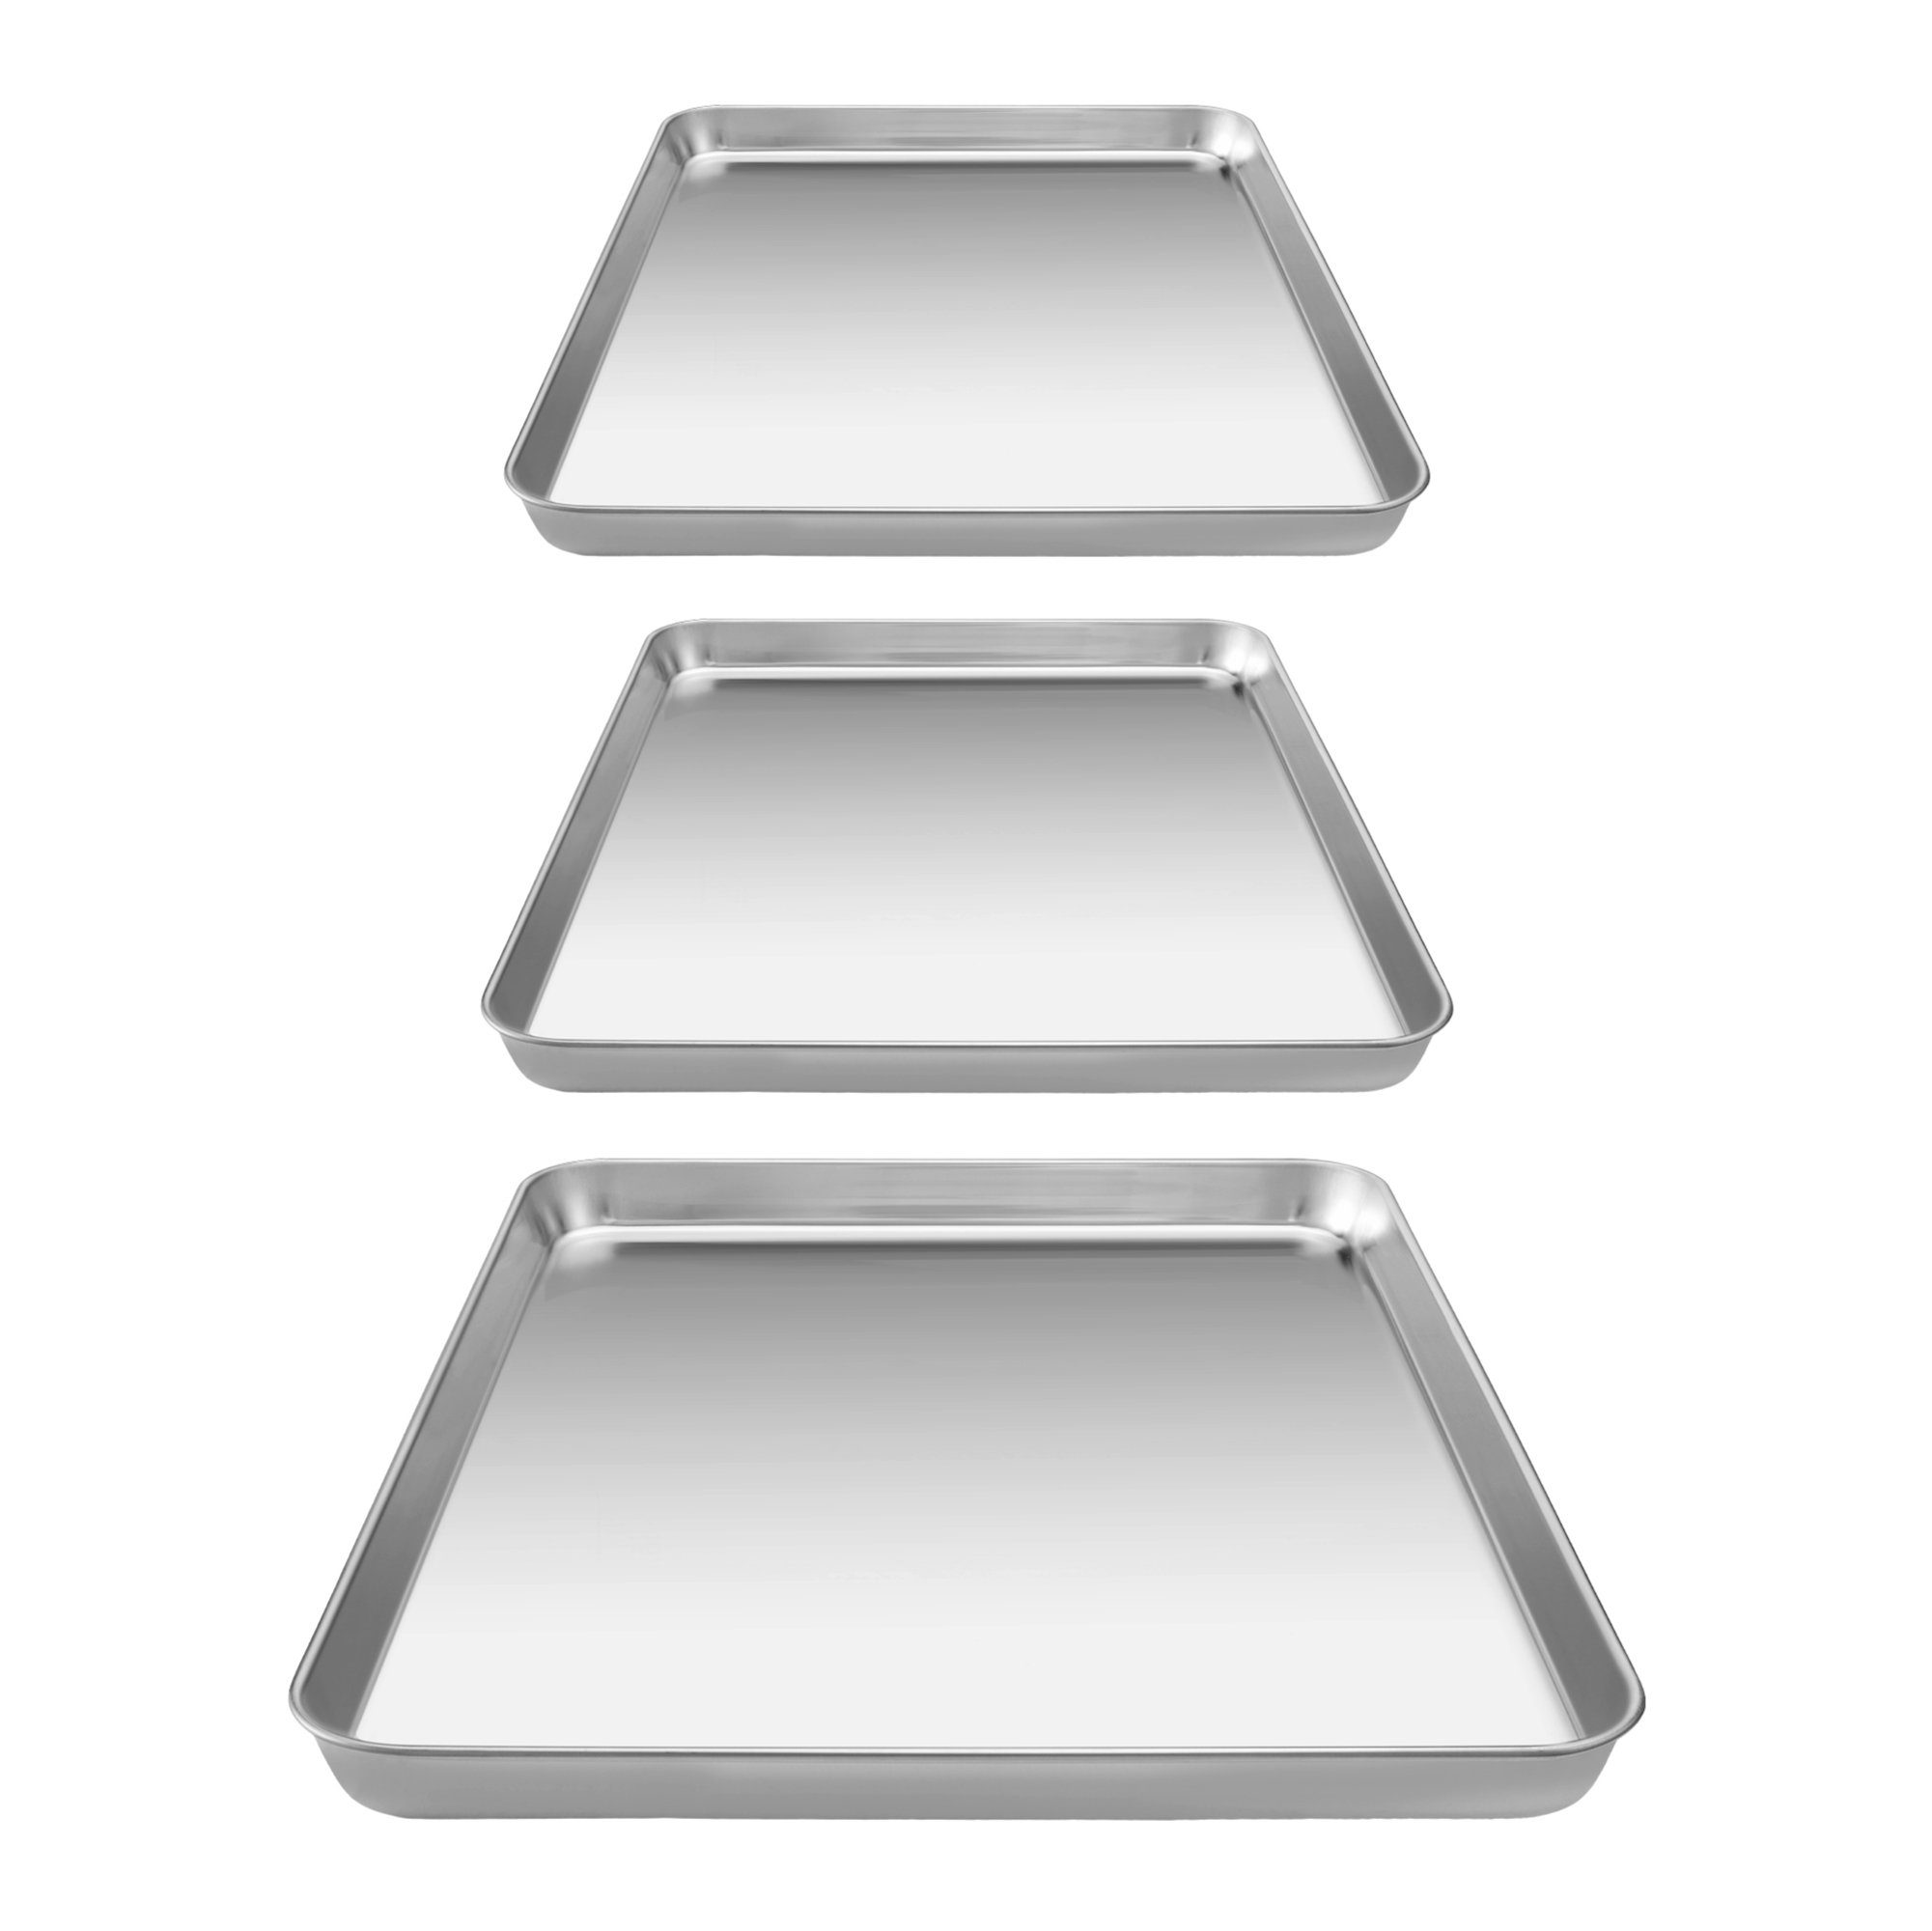 Backblech Navaris mit 3x Panierschale Edelstahl - Kühlrost, 3-teilig Set Backblech aus hohes Edelstahl